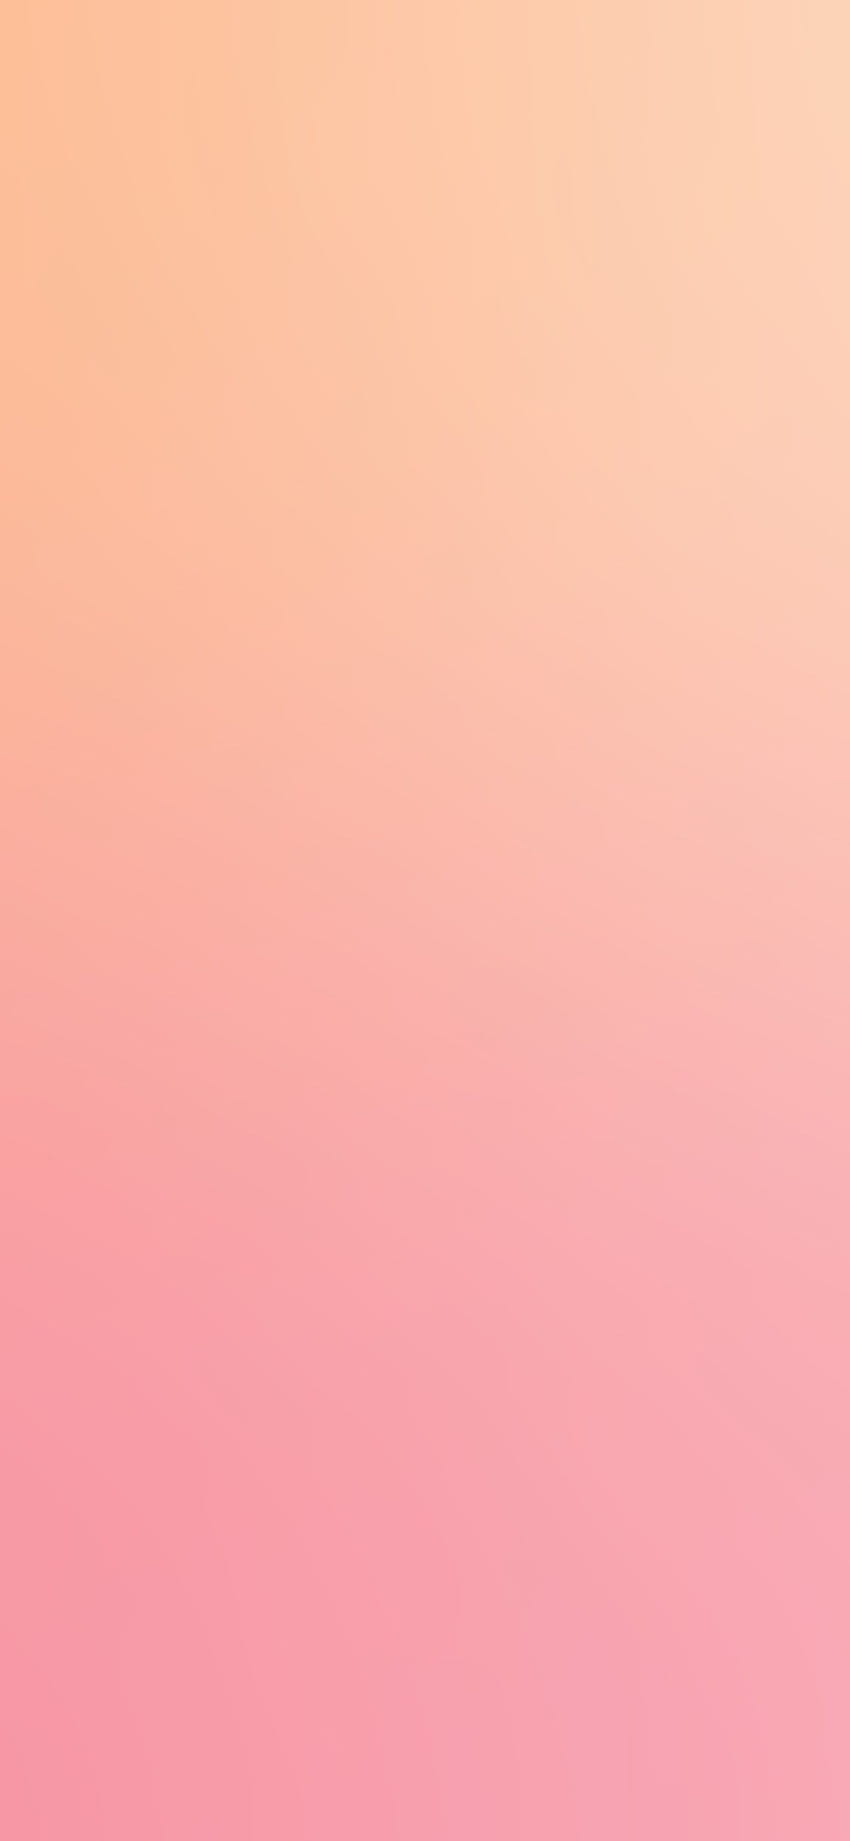 iPhone'a X. różowa brzoskwinia miękka pastelowa gradacja rozmycia, pastelowa brzoskwinia estetyczna Tapeta na telefon HD